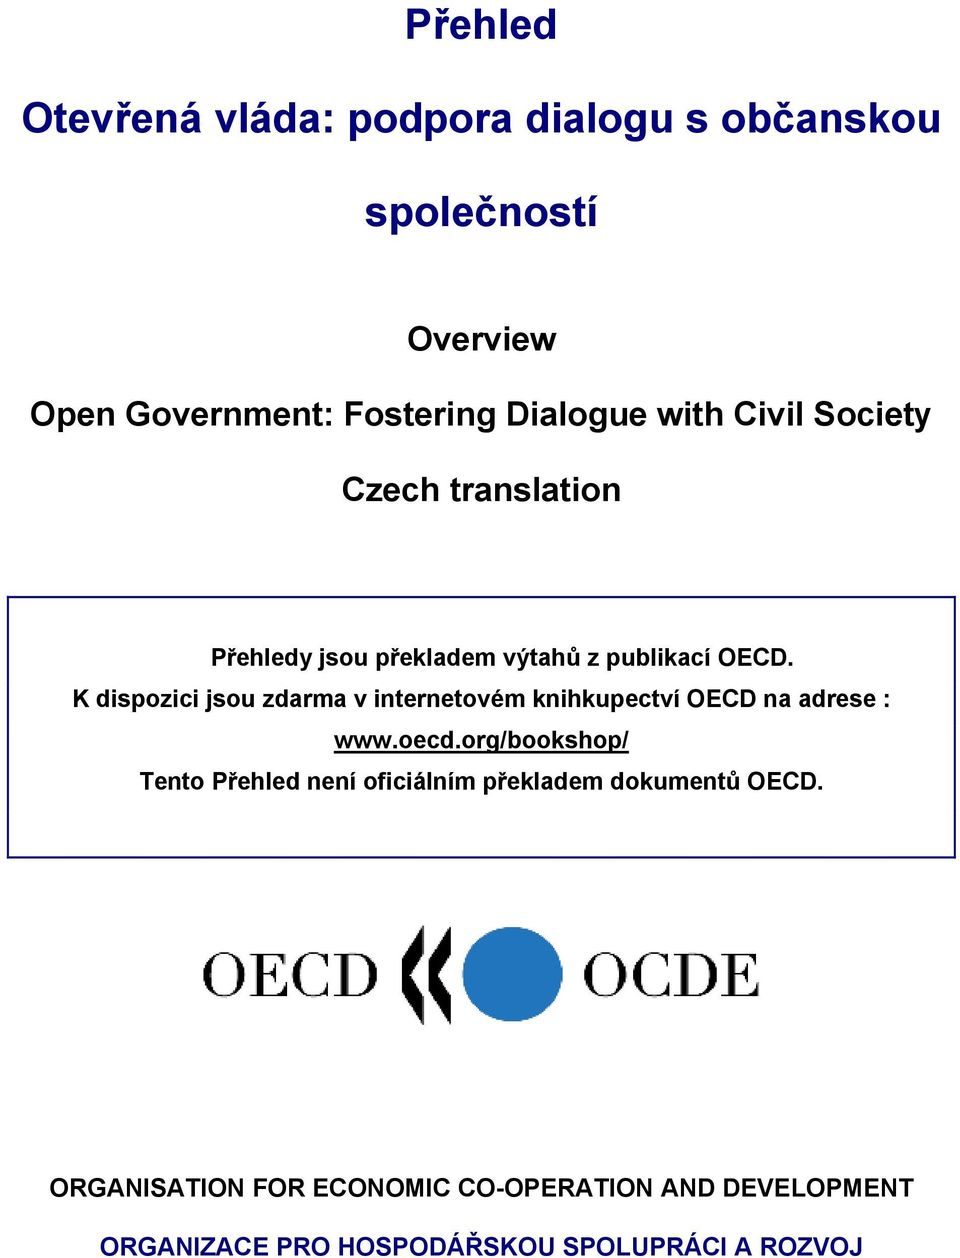 K dispozici jsou zdarma v internetovém knihkupectví OECD na adrese : www.oecd.